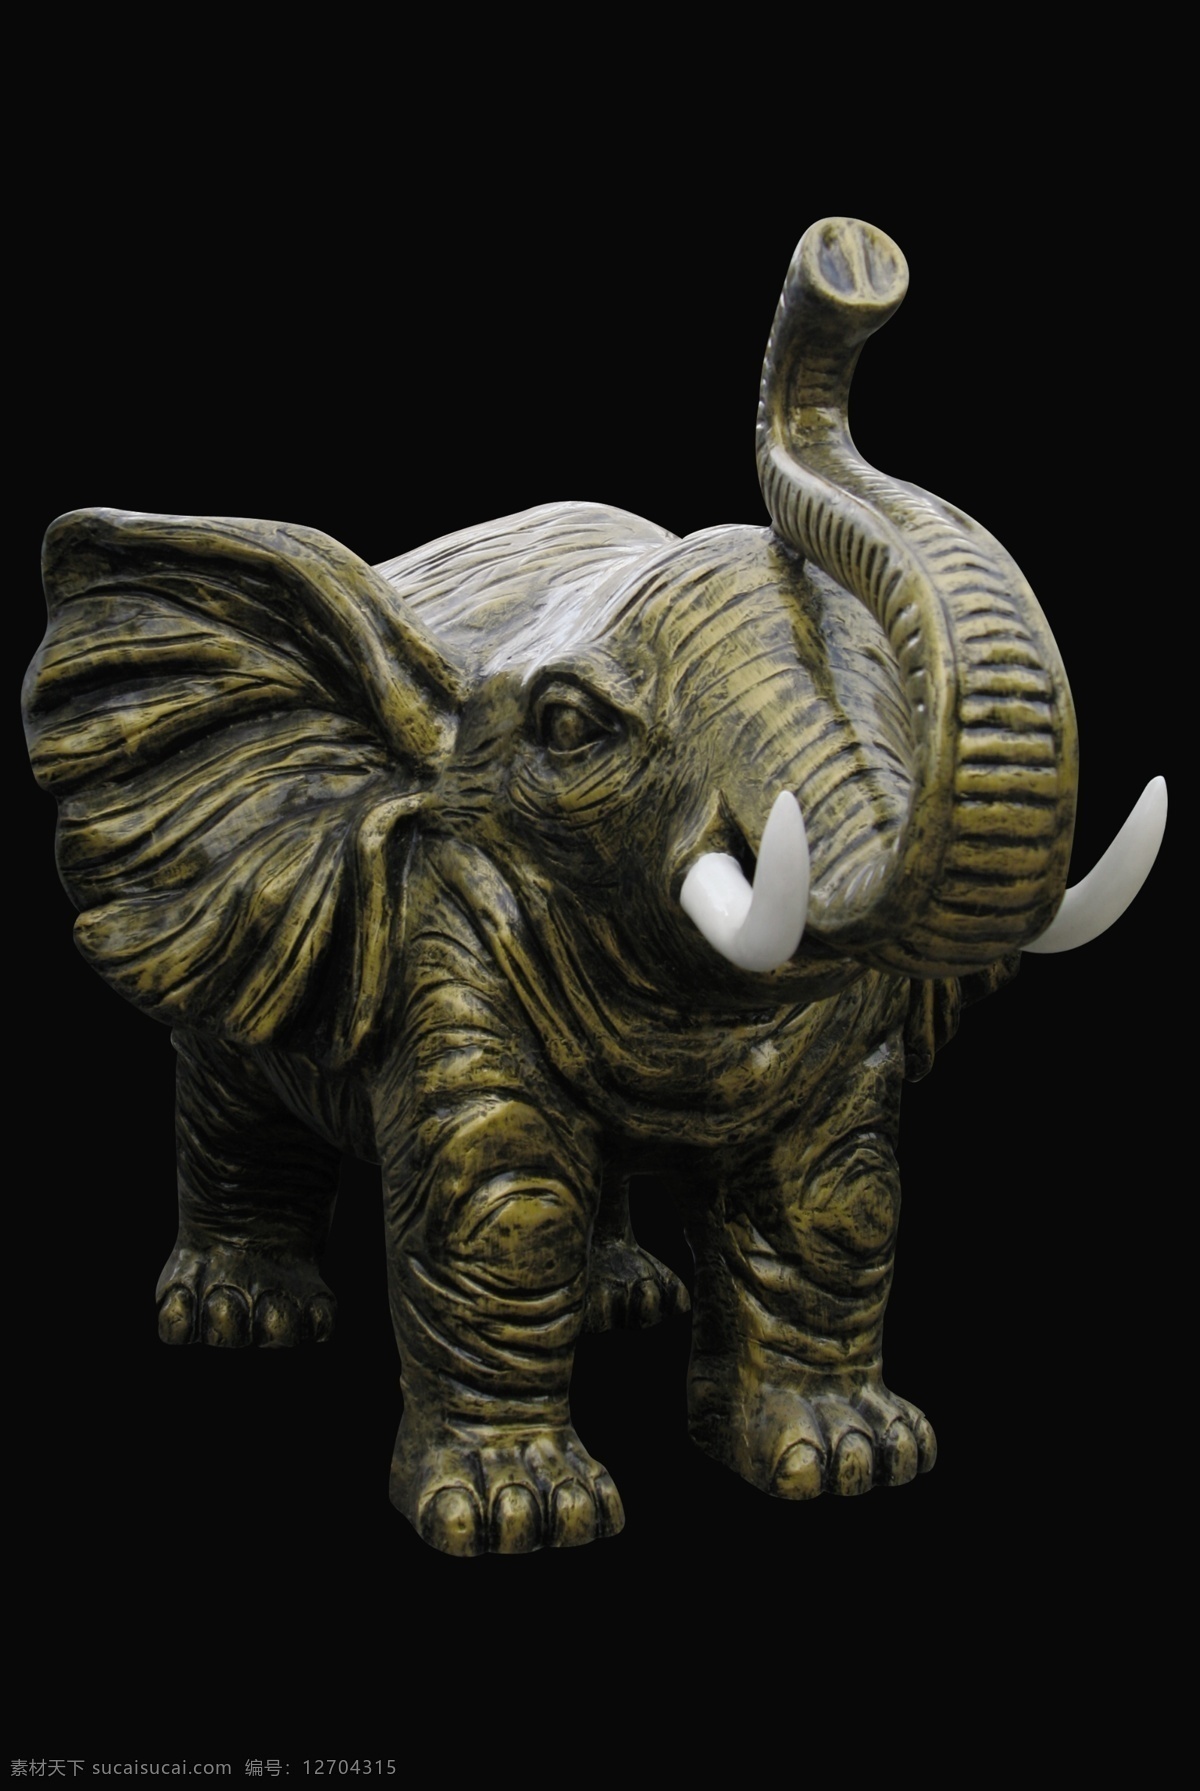 大象 青铜 雕像 大象雕塑 动物雕塑 青铜色的大象 卷起 鼻子 白色象牙 年迈的大象 psd源文件